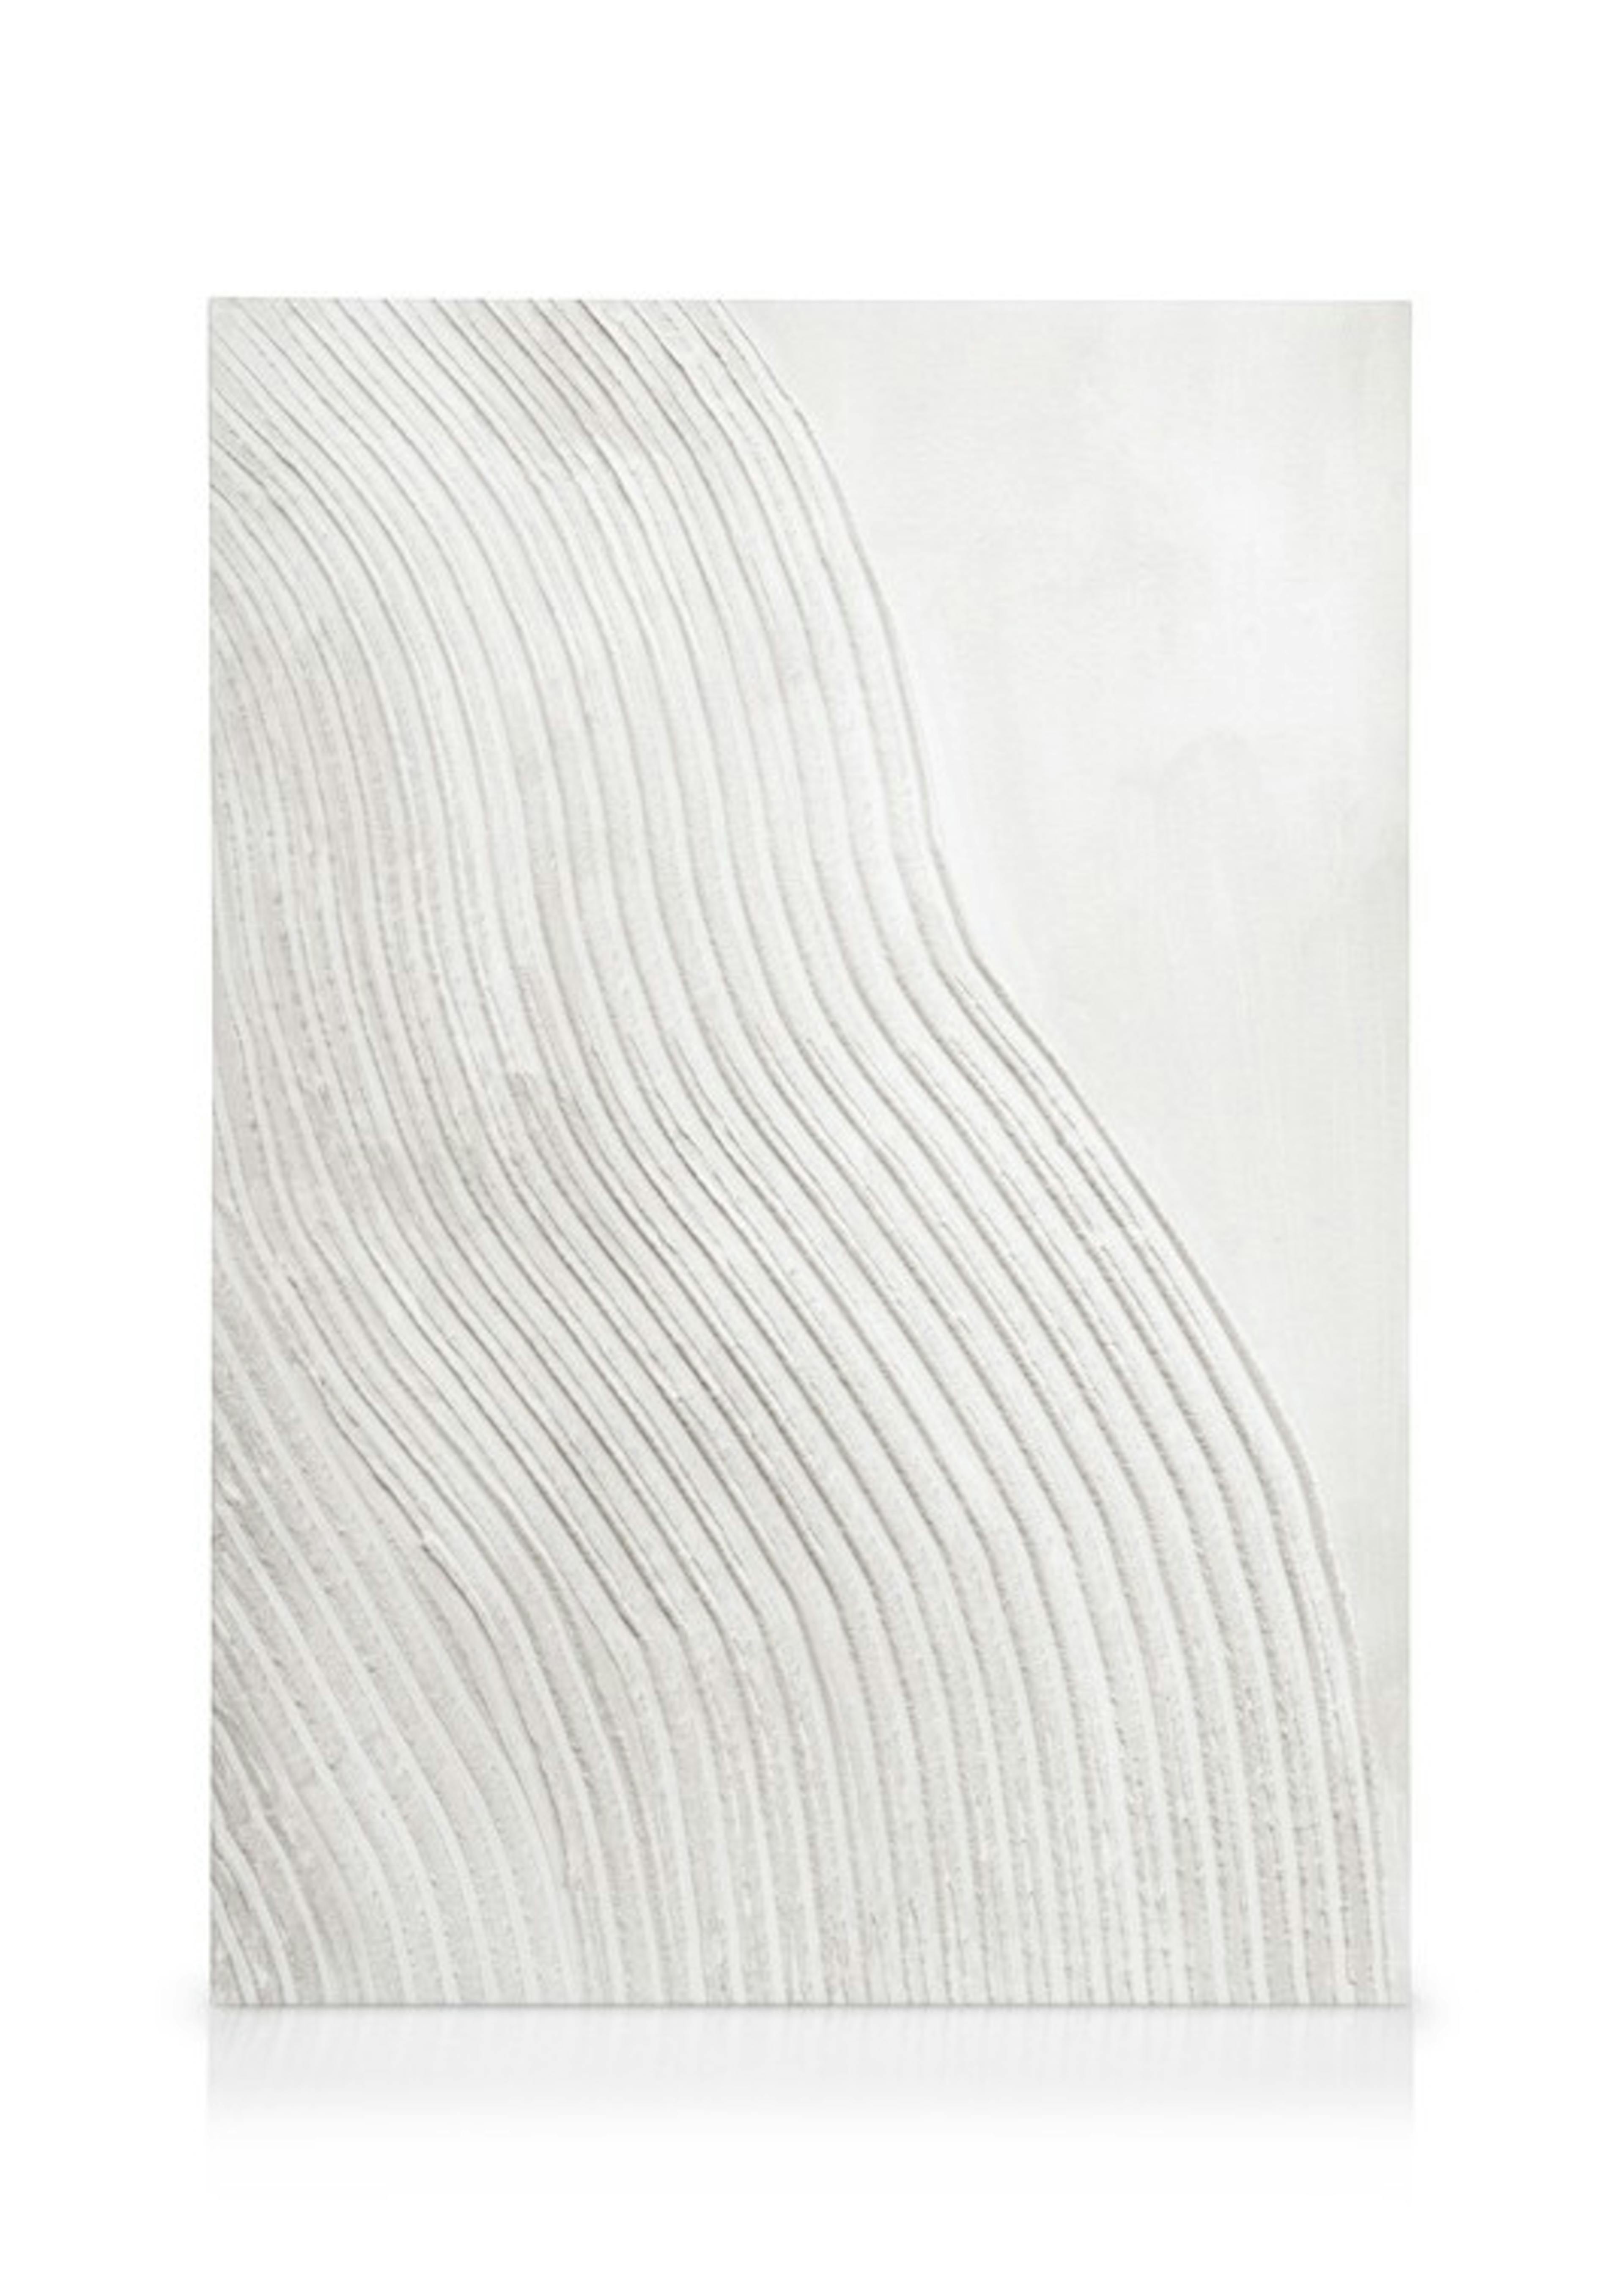 Soft Lines Texture No2 Canvas print 0